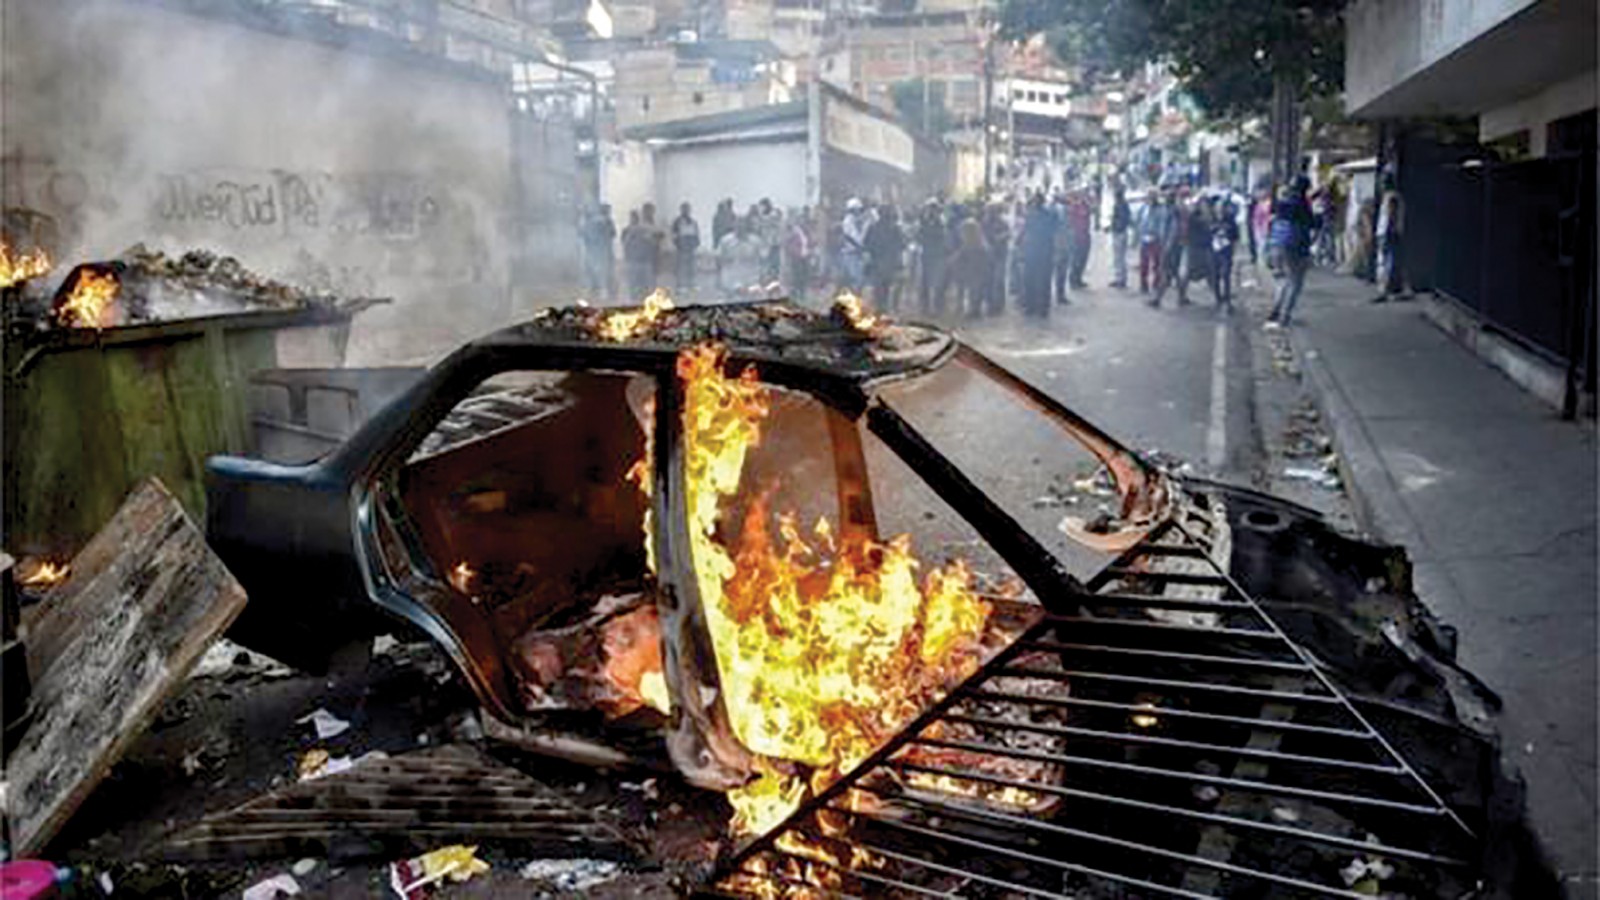 Một chiếc xe bị người biểu tình đốt trước trụ sở Vệ binh Quốc gia. Ảnh: AFP